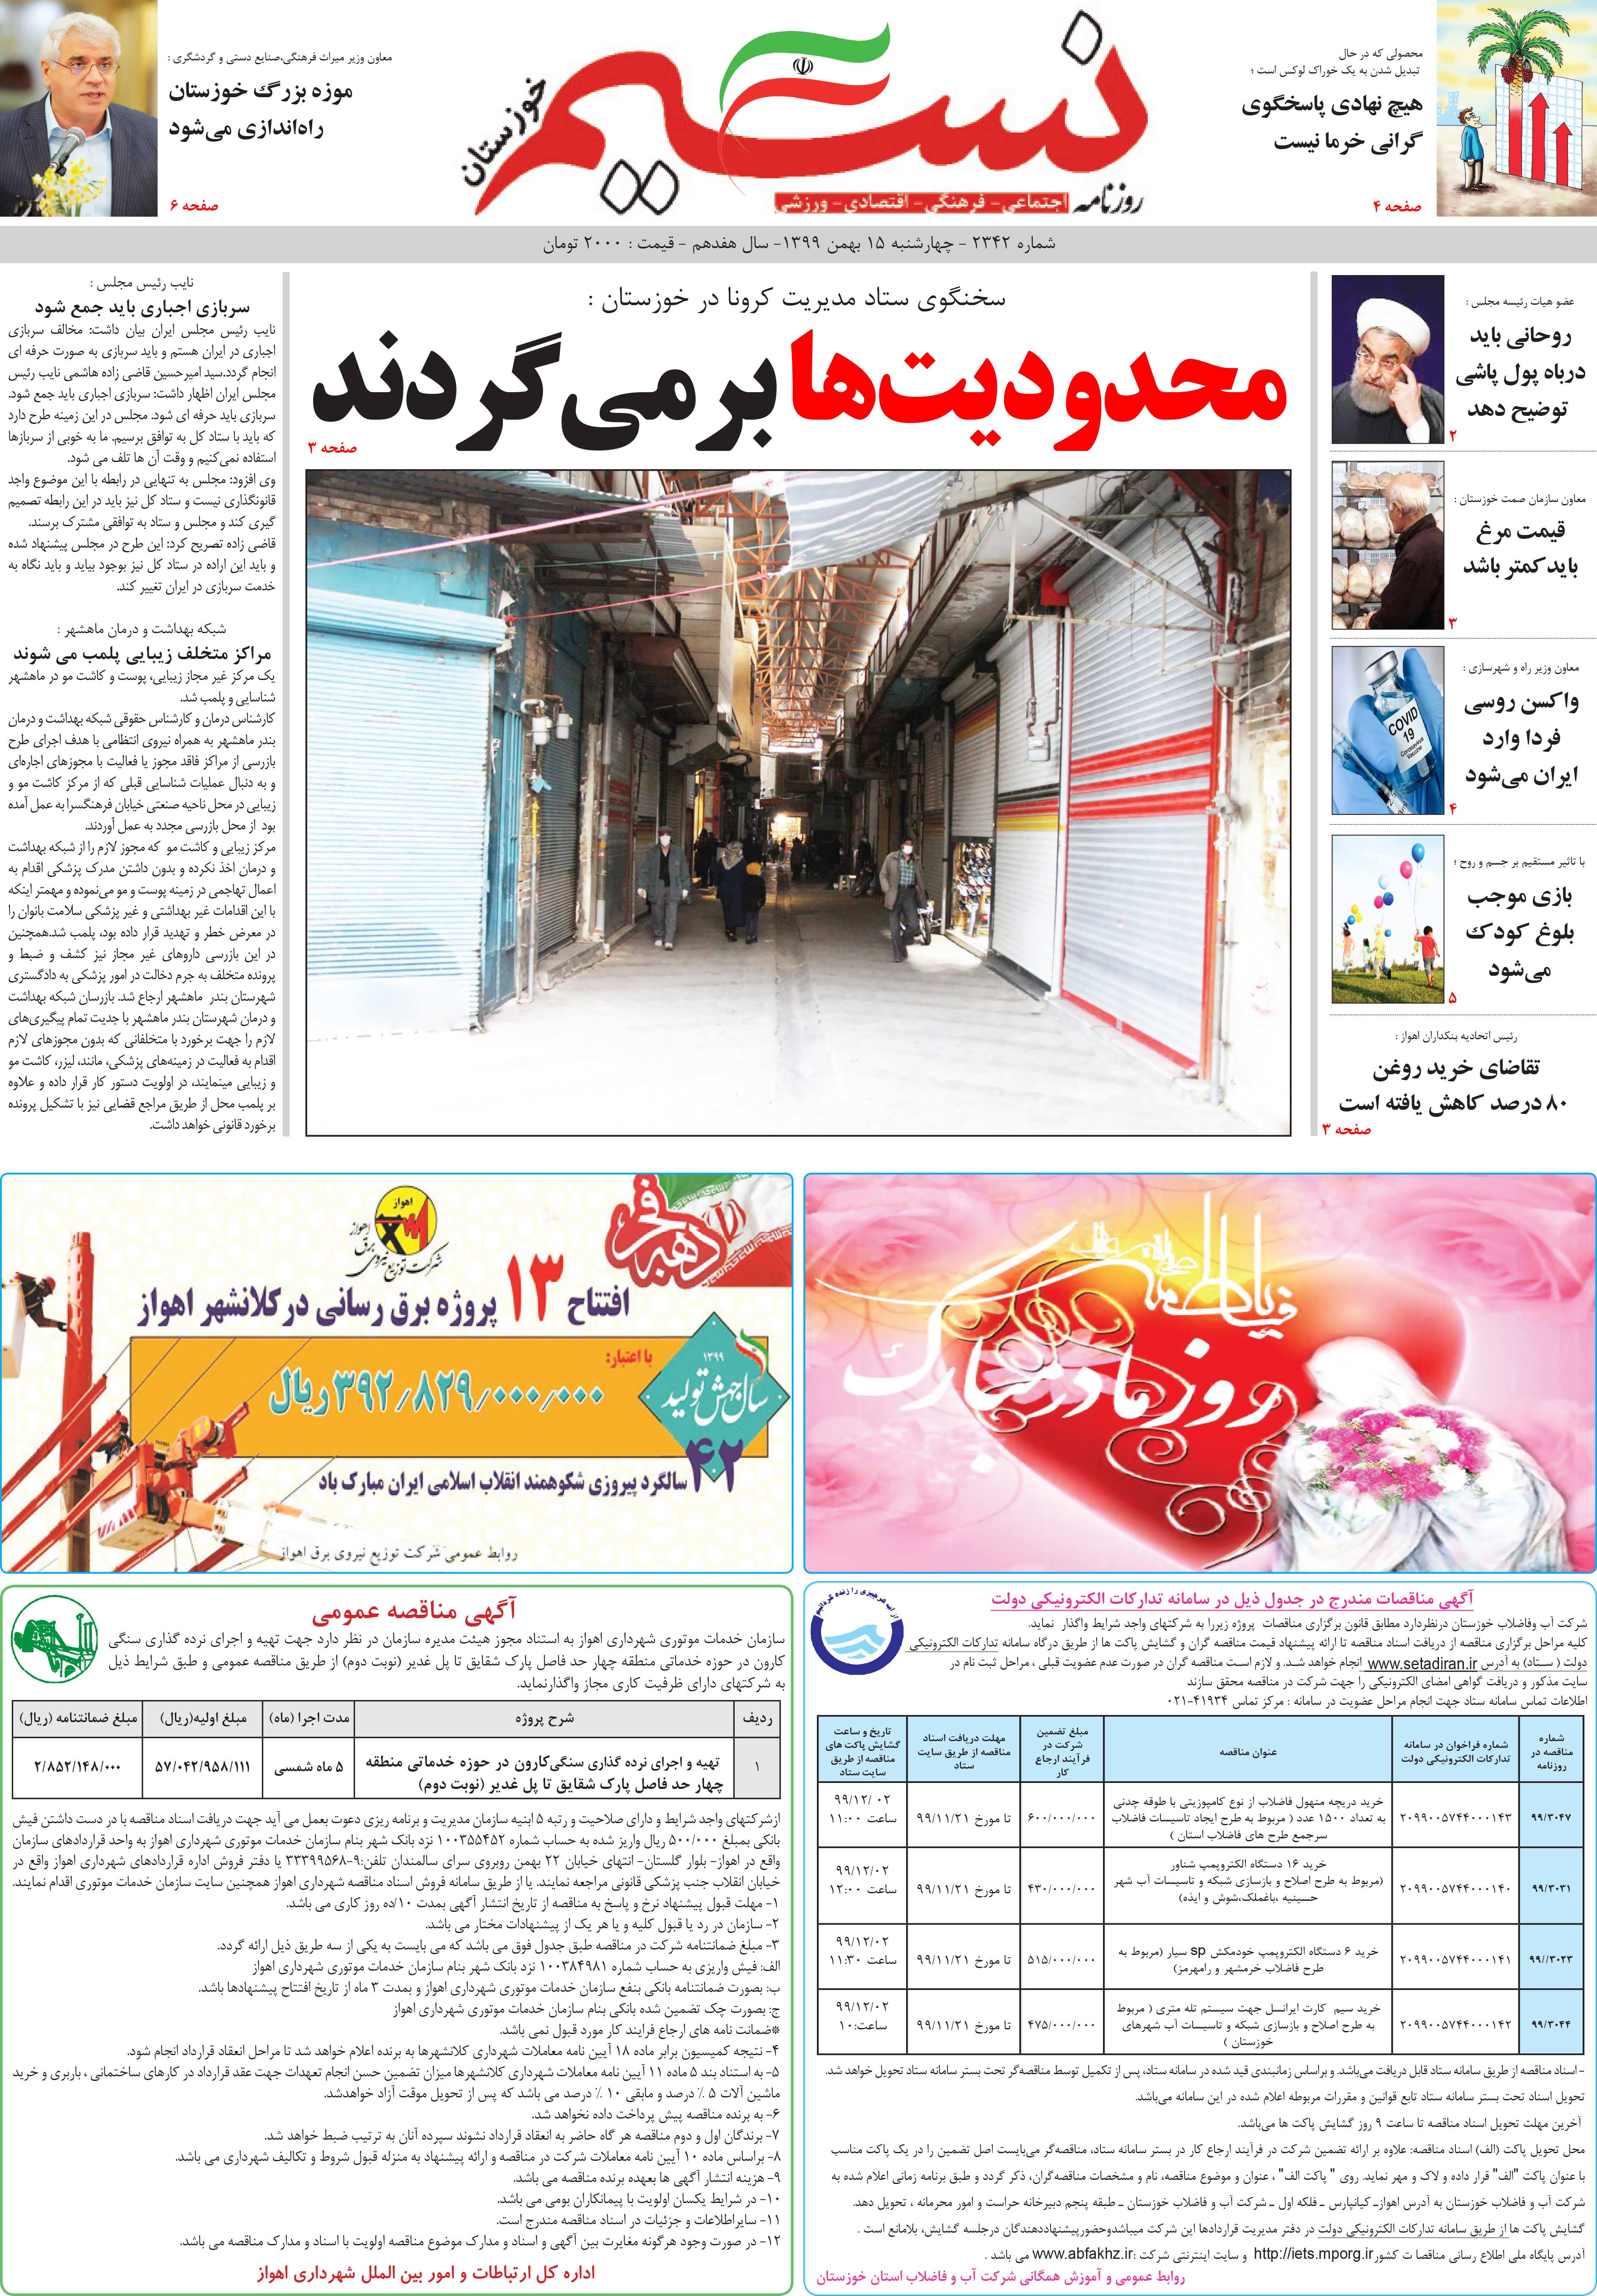 صفحه اصلی روزنامه نسیم شماره 2342 